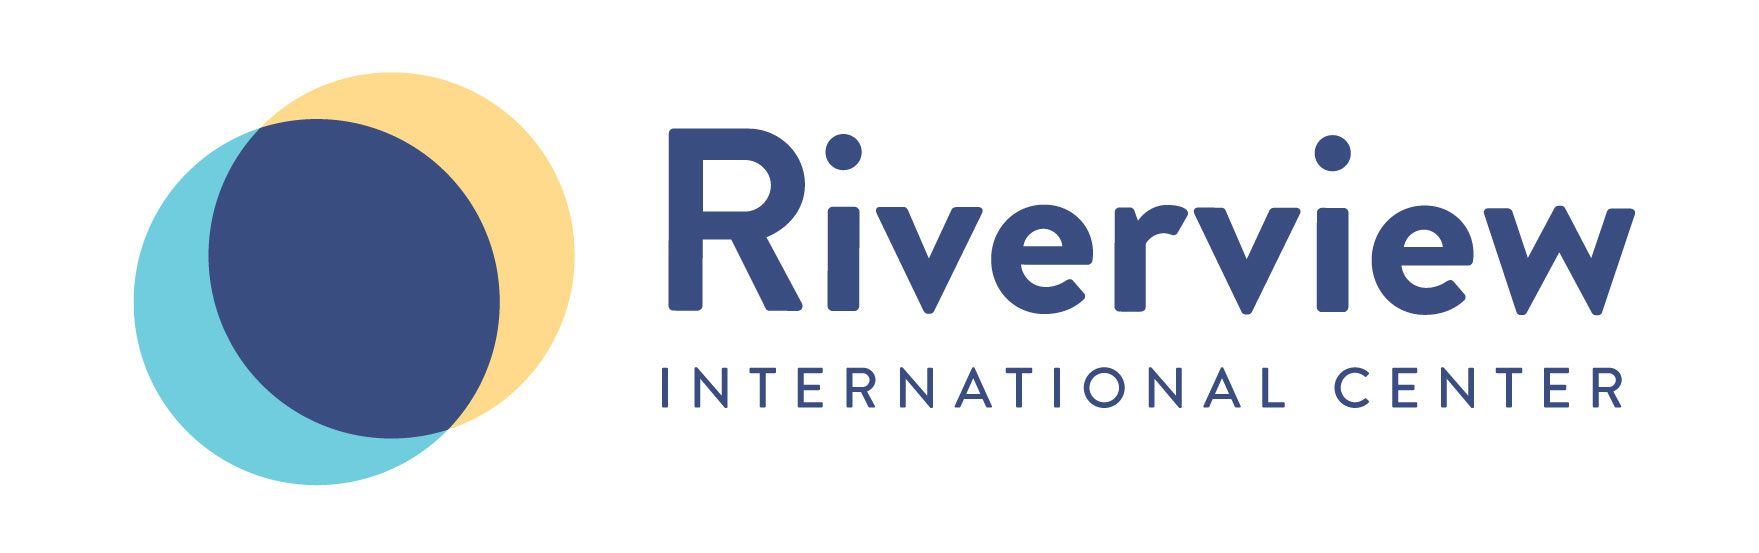 Riverview International Center - Logo